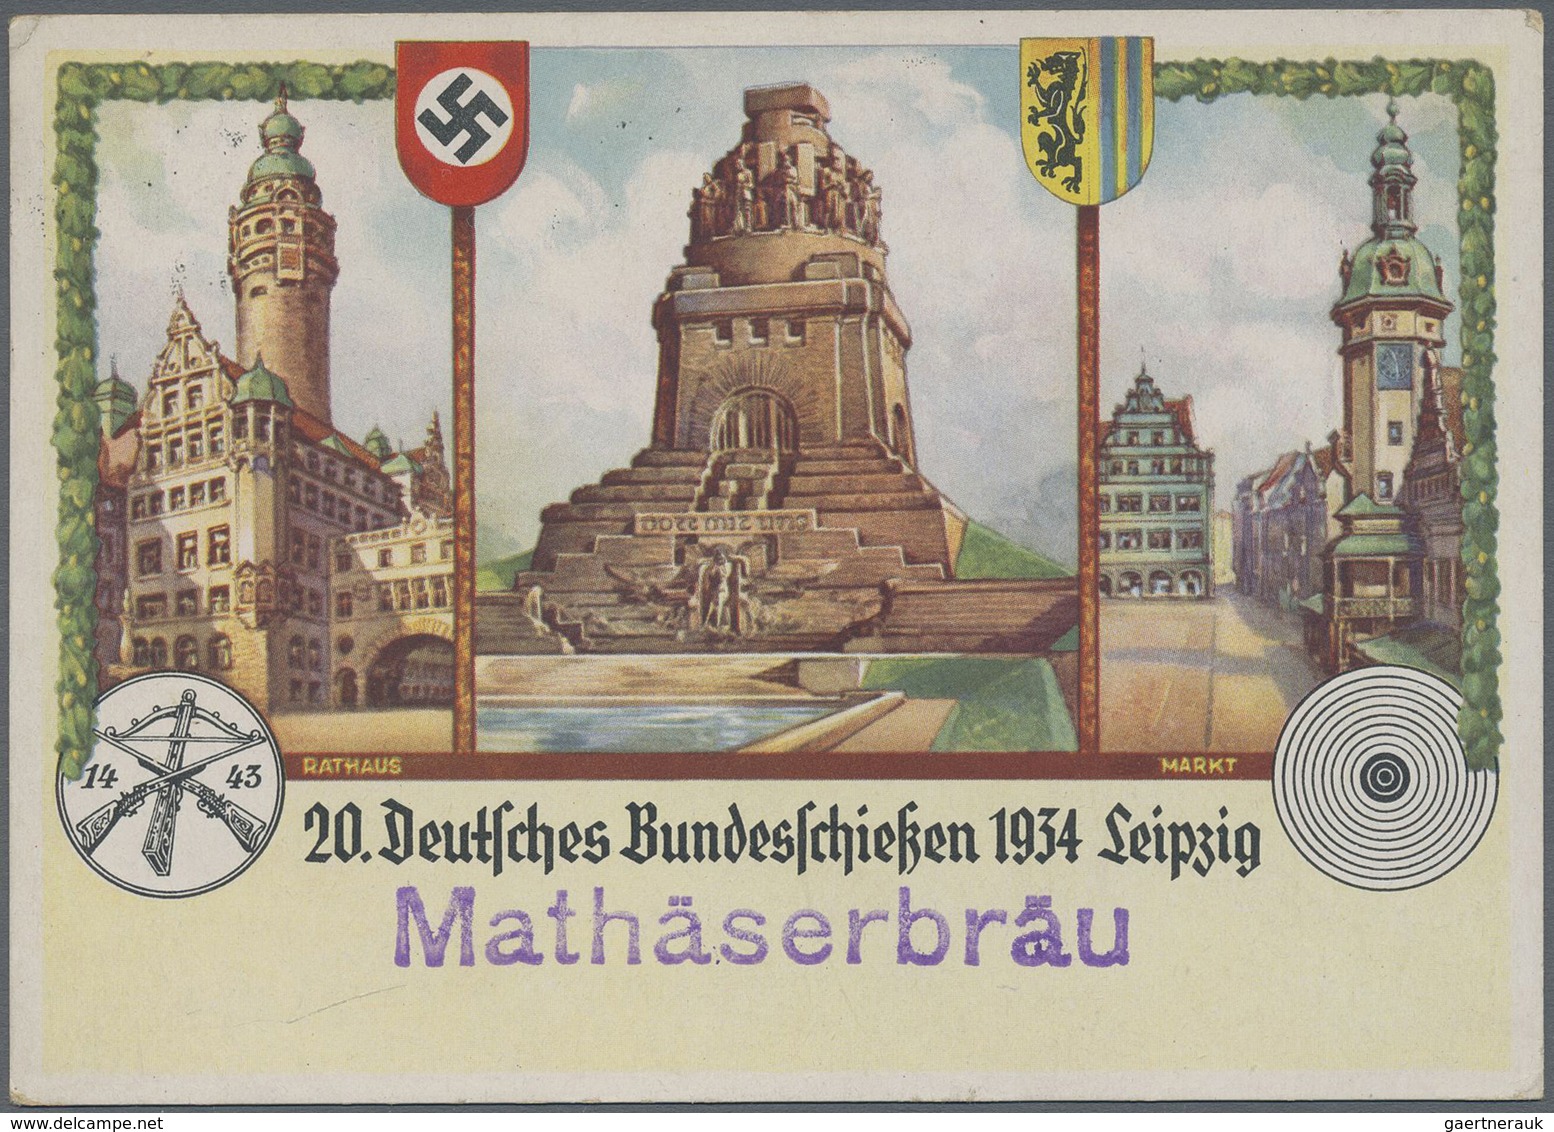 Ansichtskarten: Propaganda: 1934, "20. Deutsches Bundesschießen Leipzig" Offiz. Festpostkarte Nr. 1 - Parteien & Wahlen